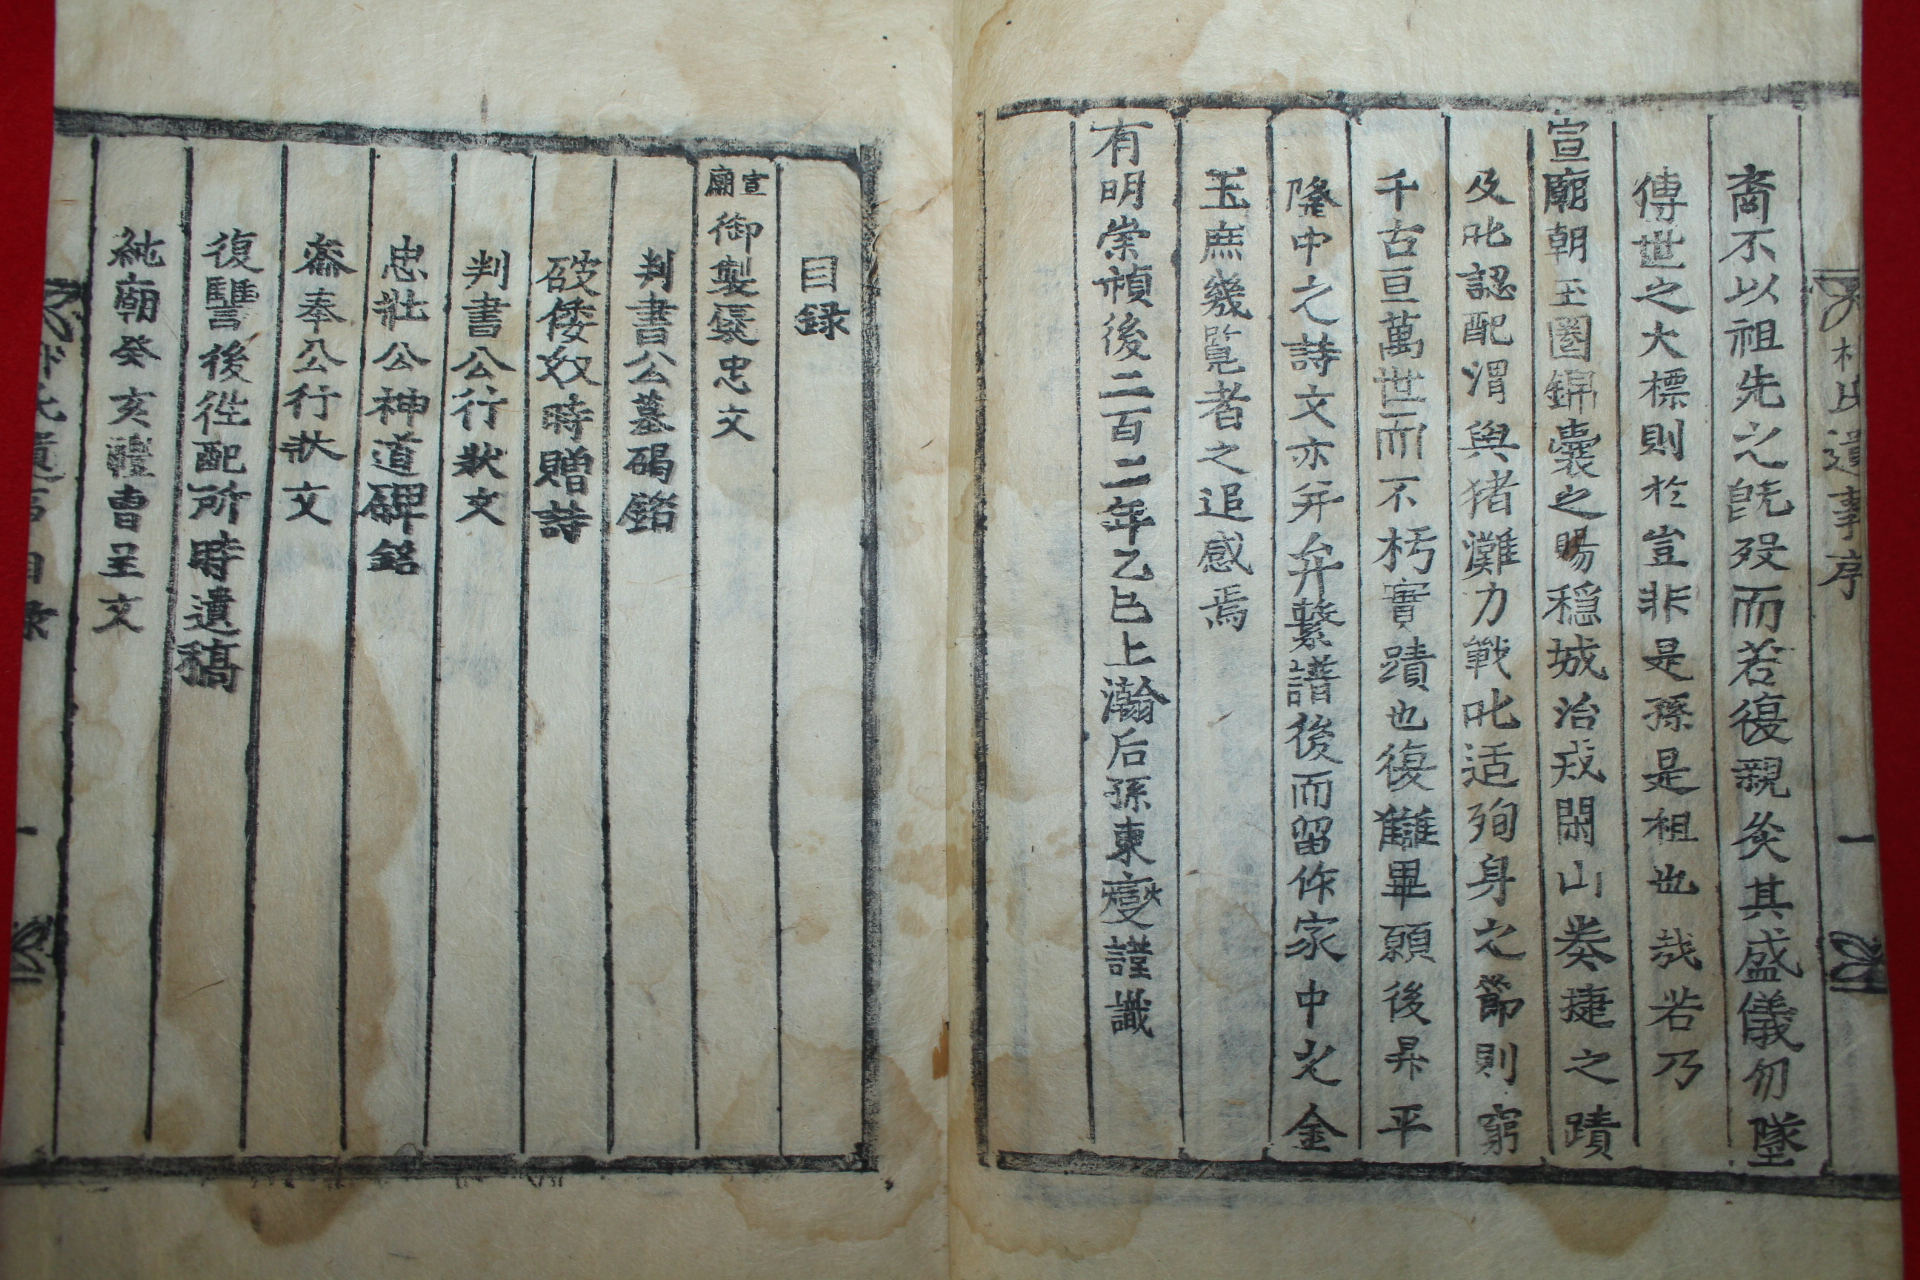 1845년 목활자본 희귀본 밀성박씨유사(密城朴氏遺事) 1책완질